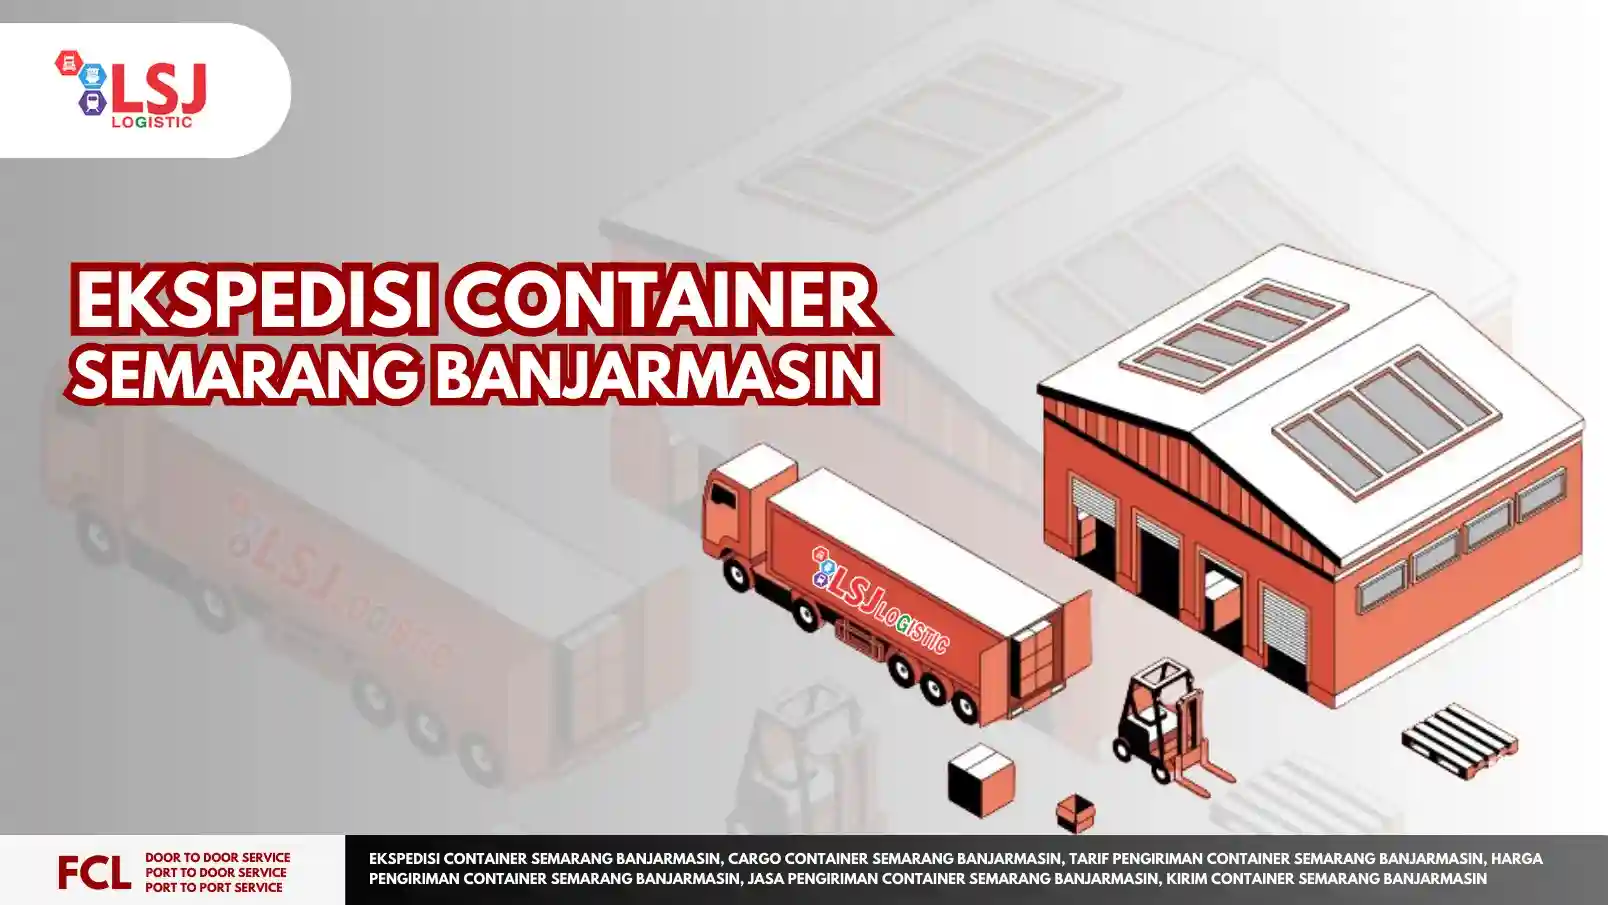 Ekspedisi Container Semarang Banjarmasin